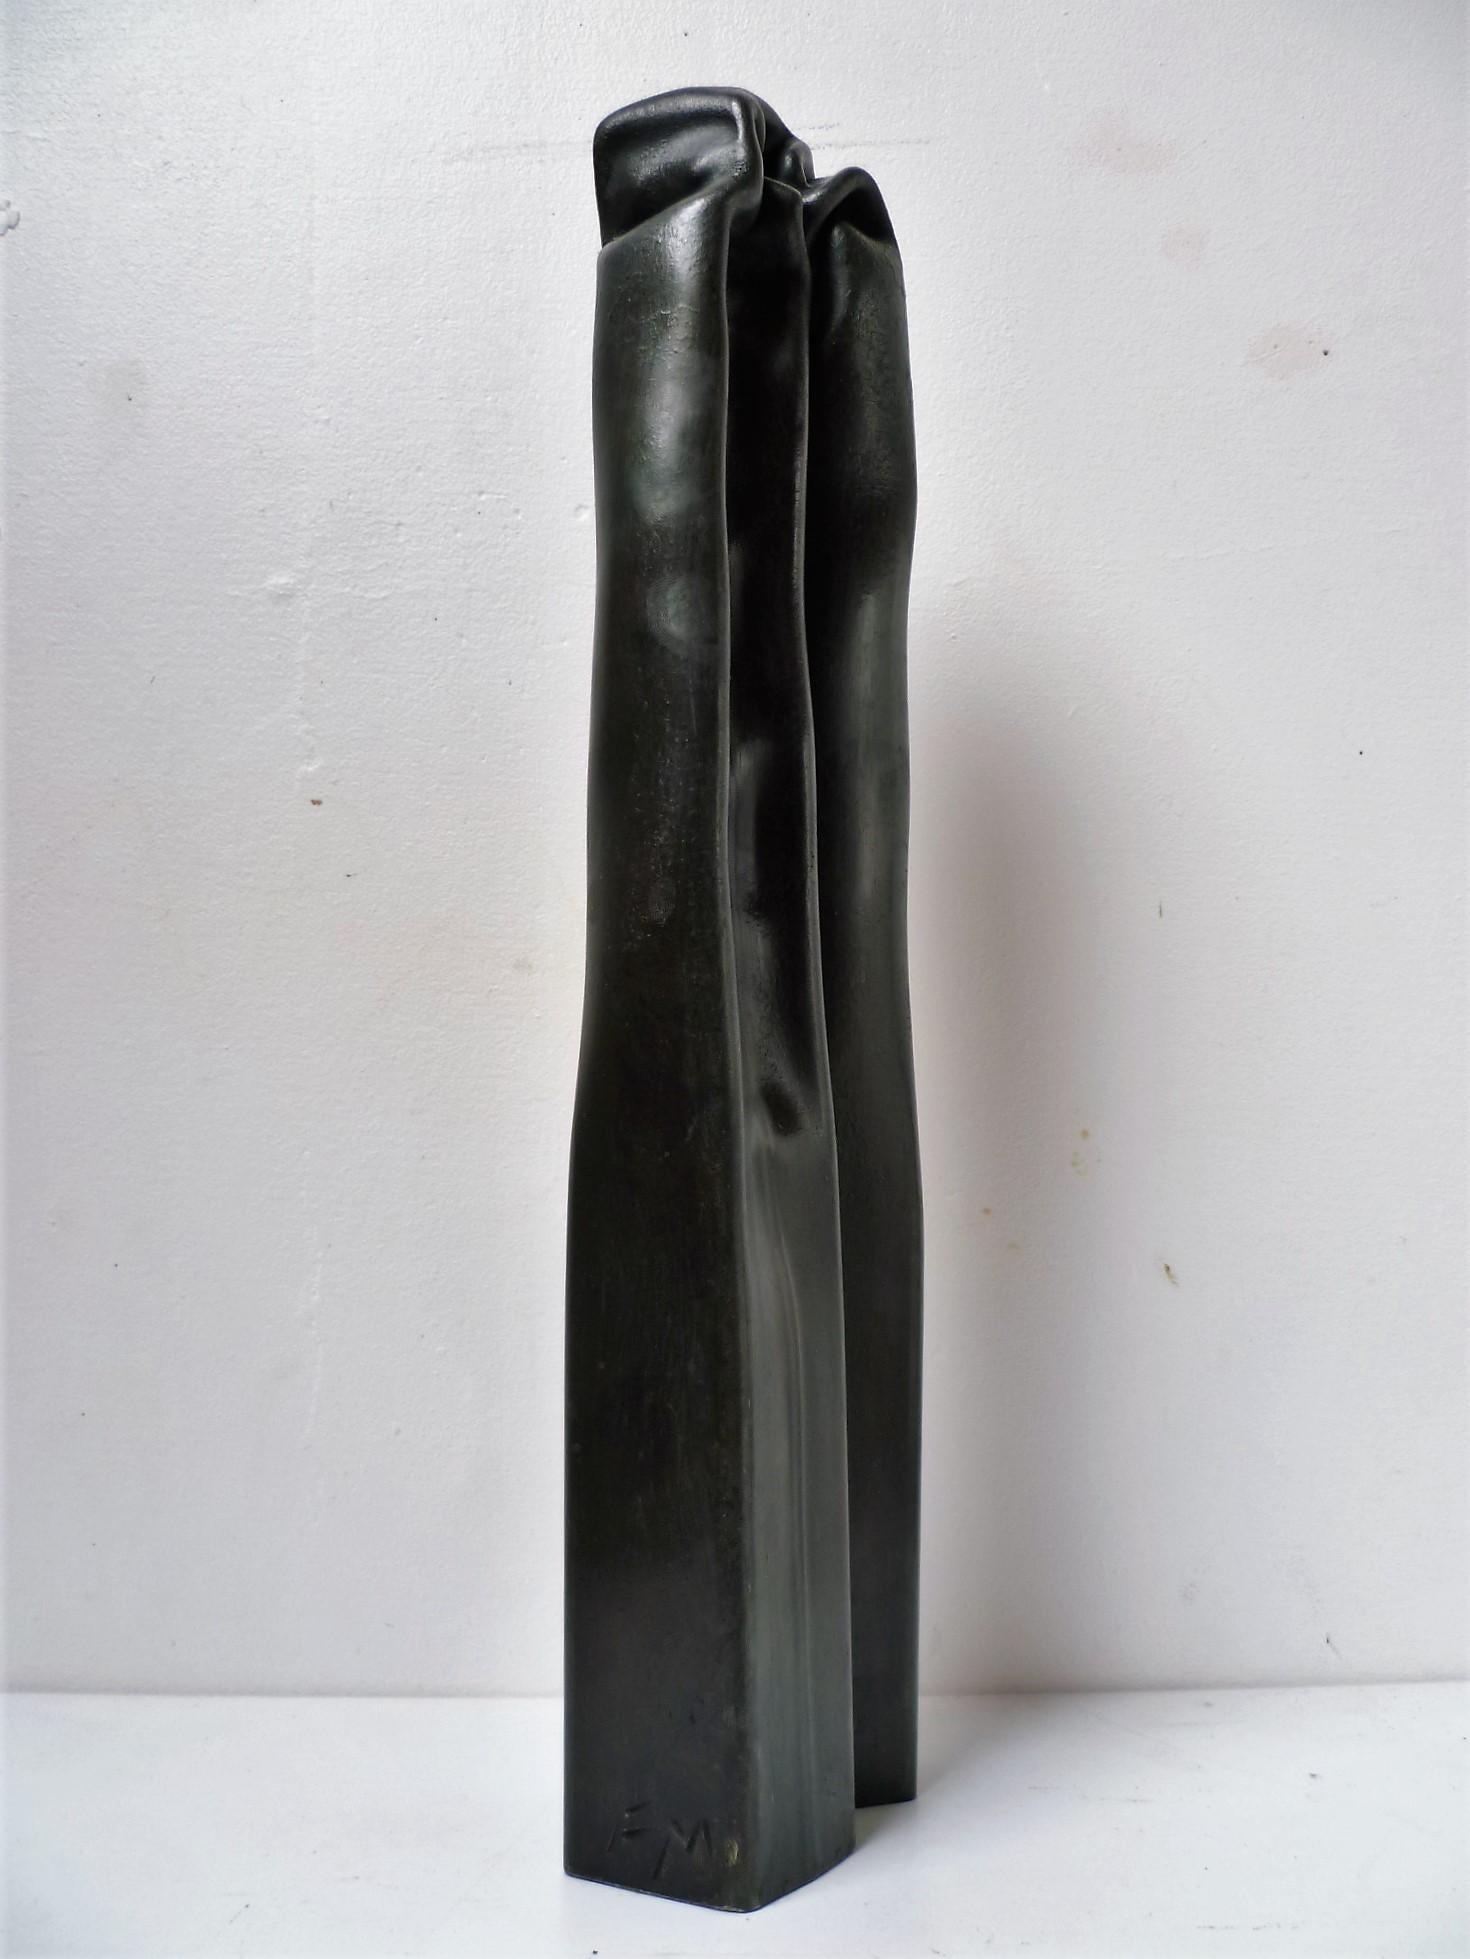 Zeitgenössische Kunst von Frdrick Mazoir - Magmatisme 08 – Sculpture von Frédérick Mazoir 